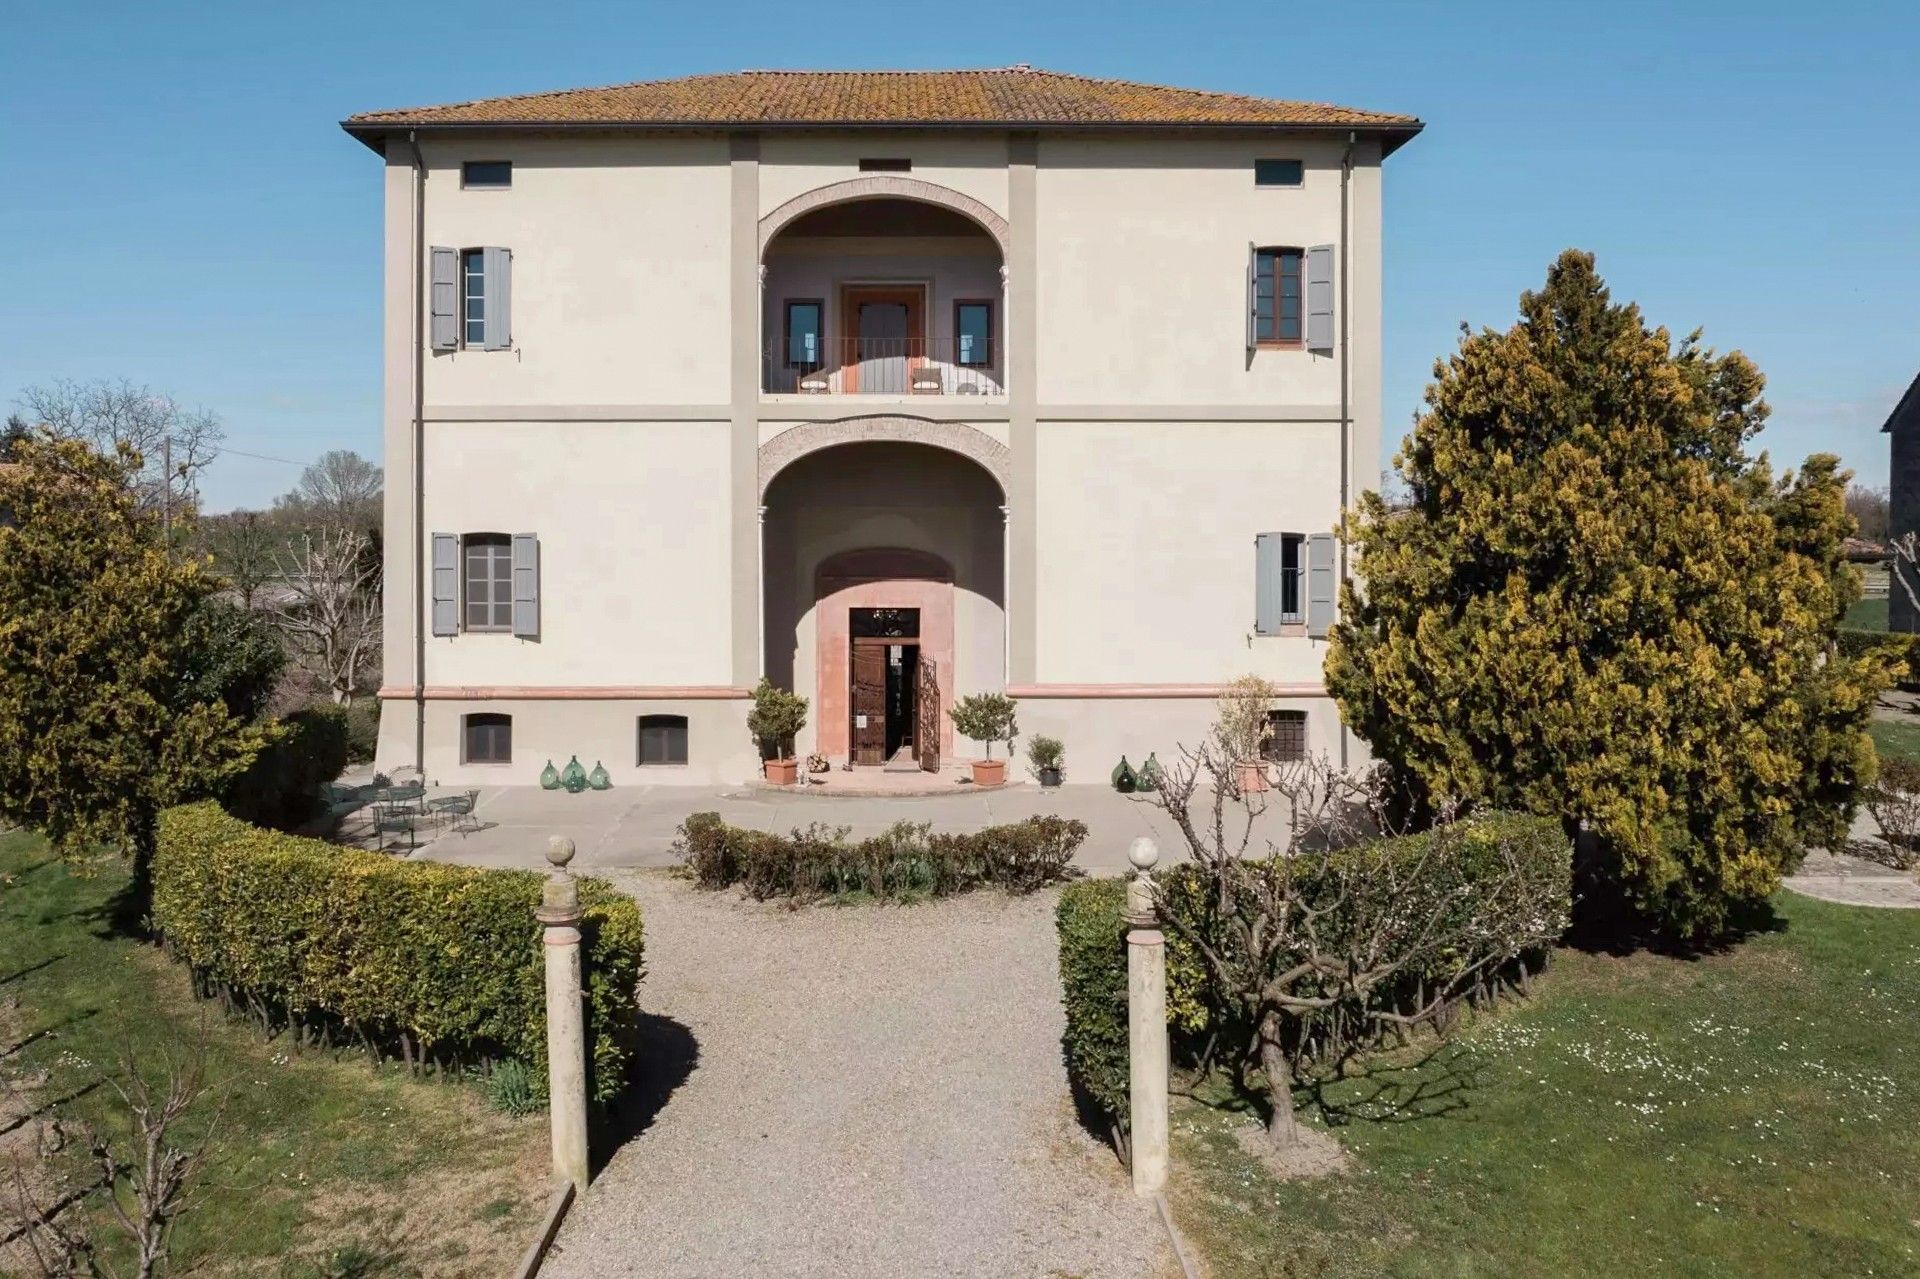 Fotos Villa mit kleinem Weinberg nördlich von Parma